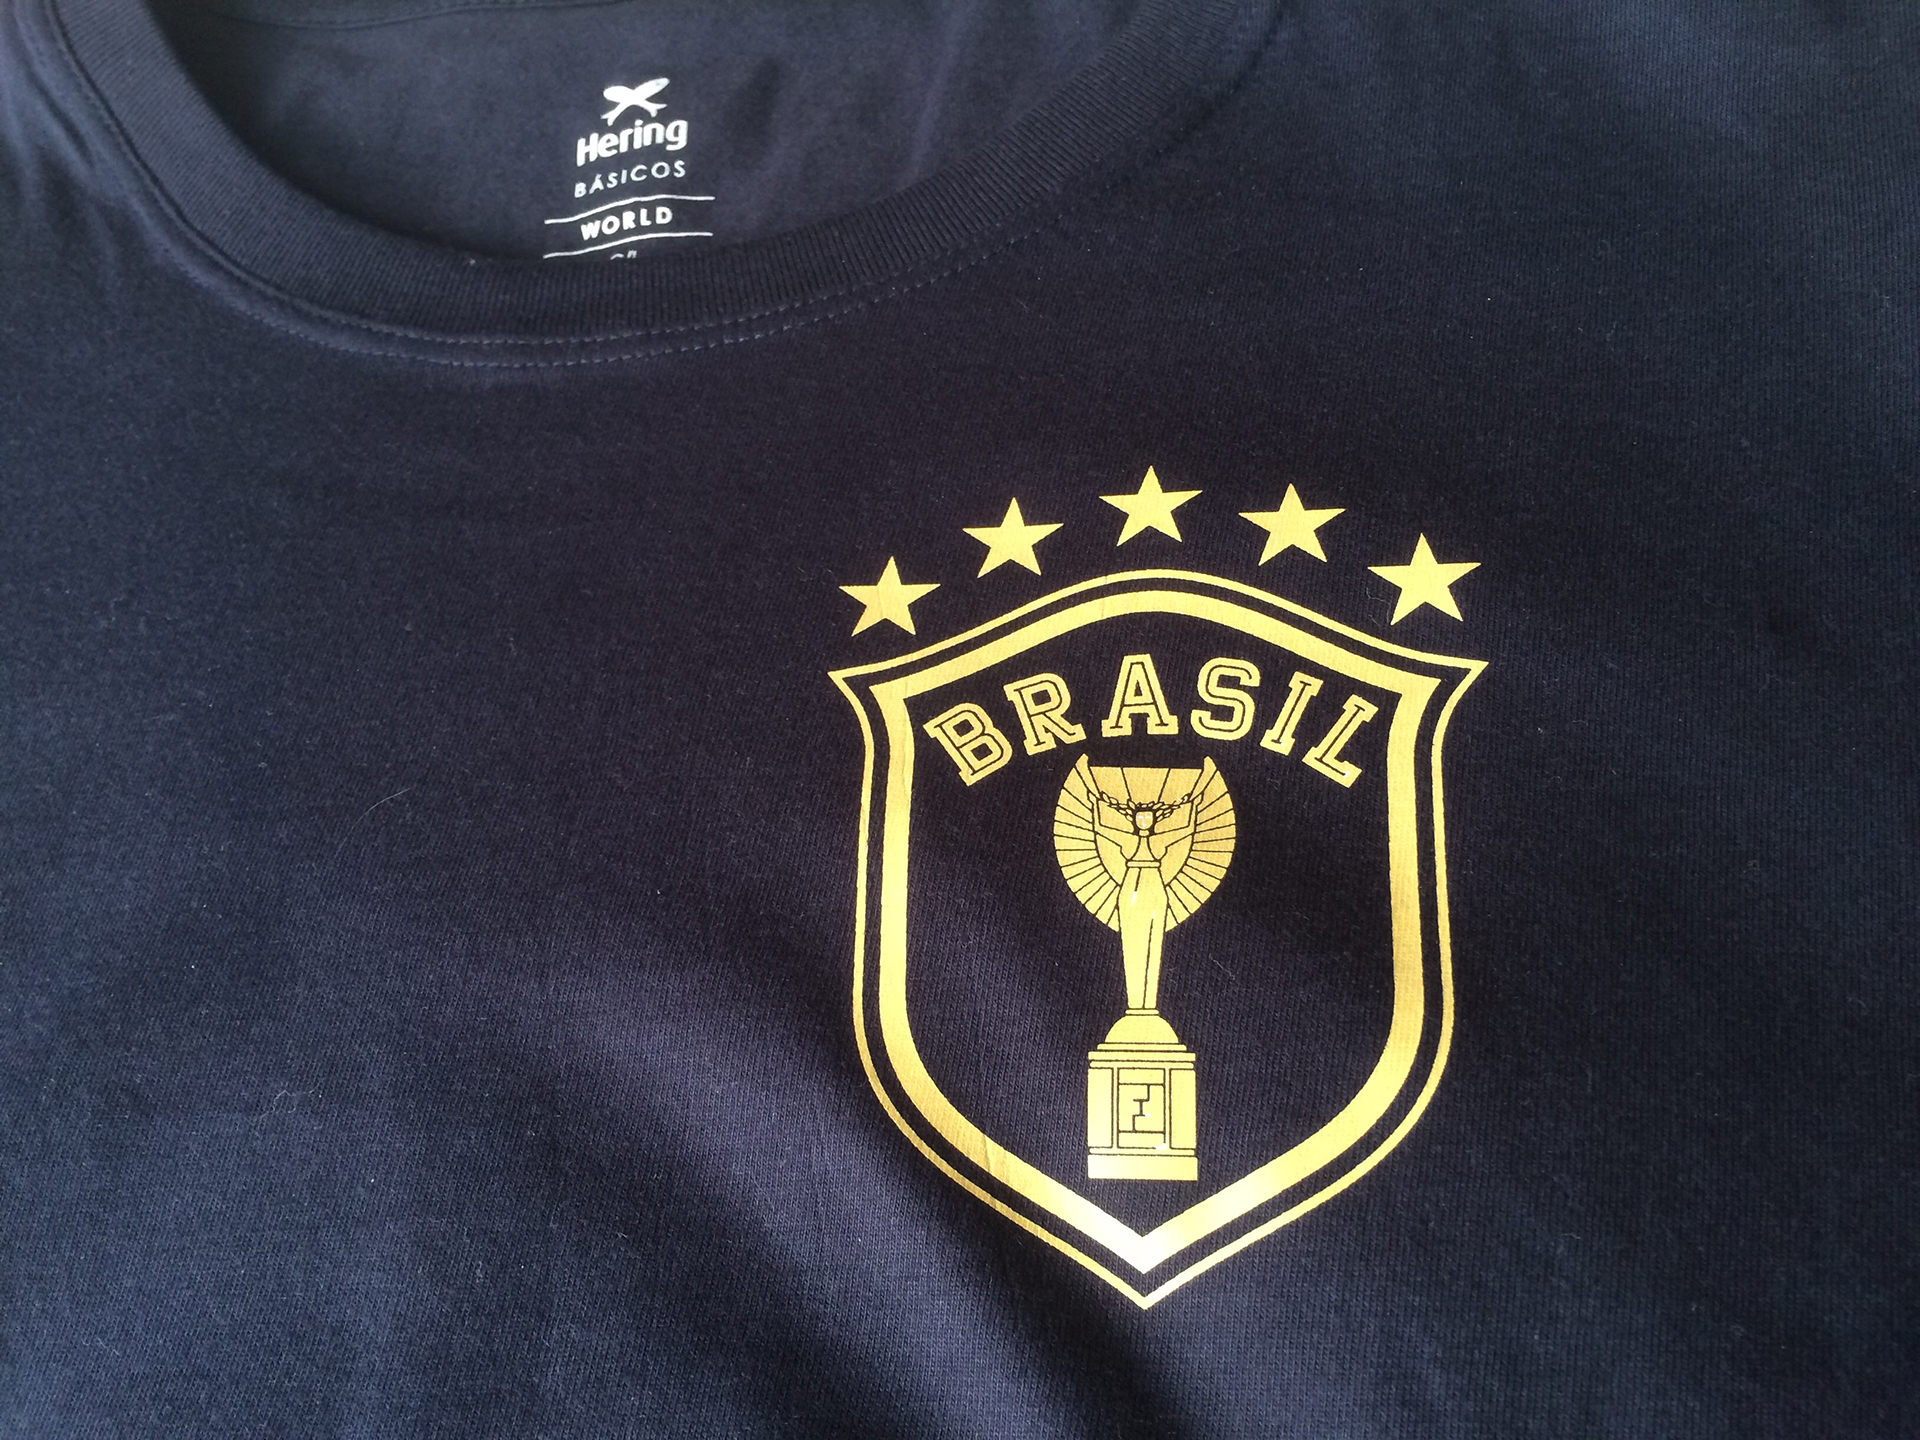 Camisas personalizadas com o escudo #OficialéaPaixão